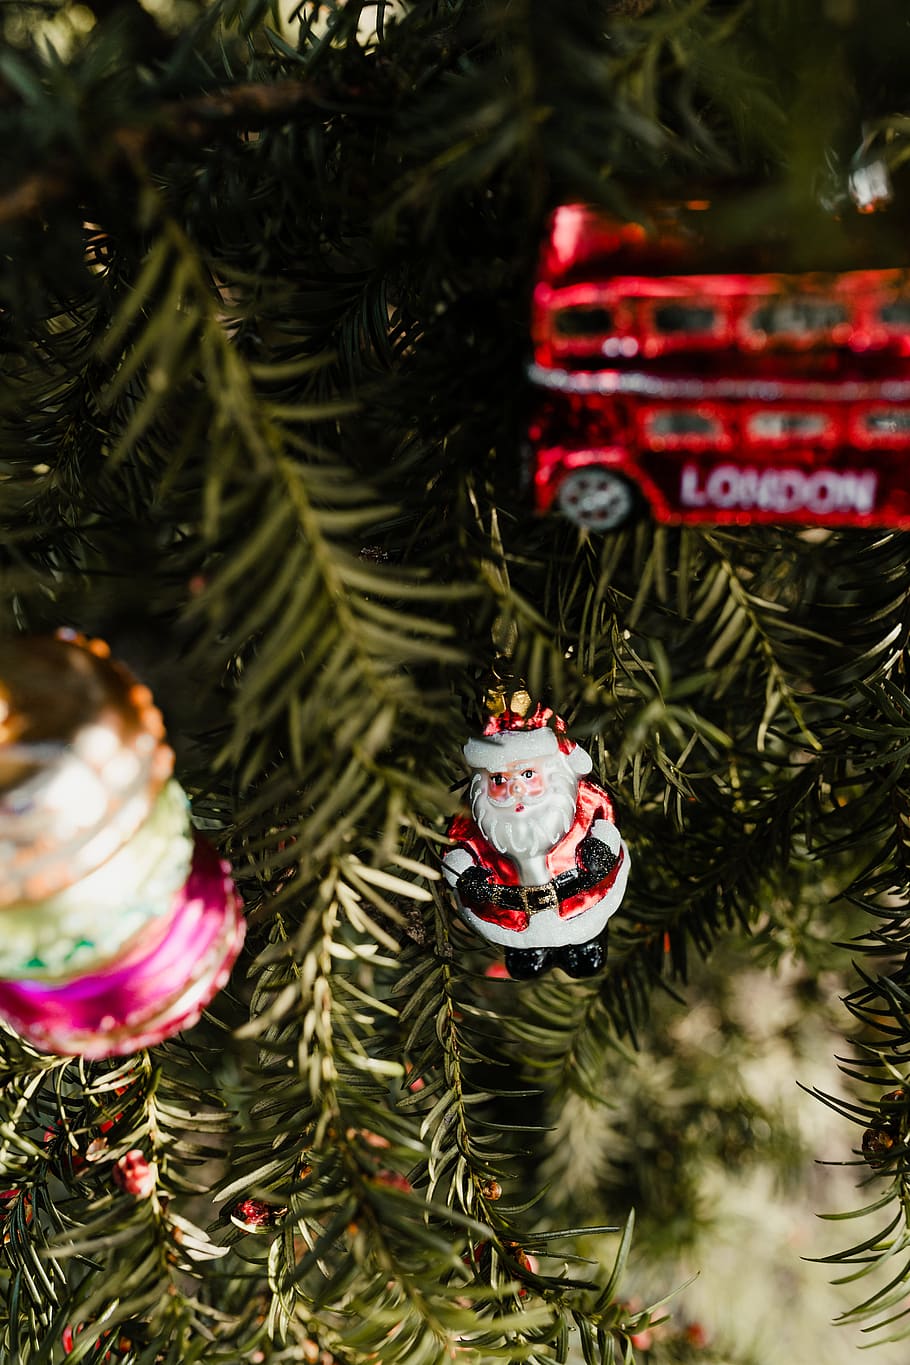 Bolas de navidad, decoraciones, navidad, árbol de navidad, diciembre, divertido, árbol, celebracion, decoracion de navidad, arbol